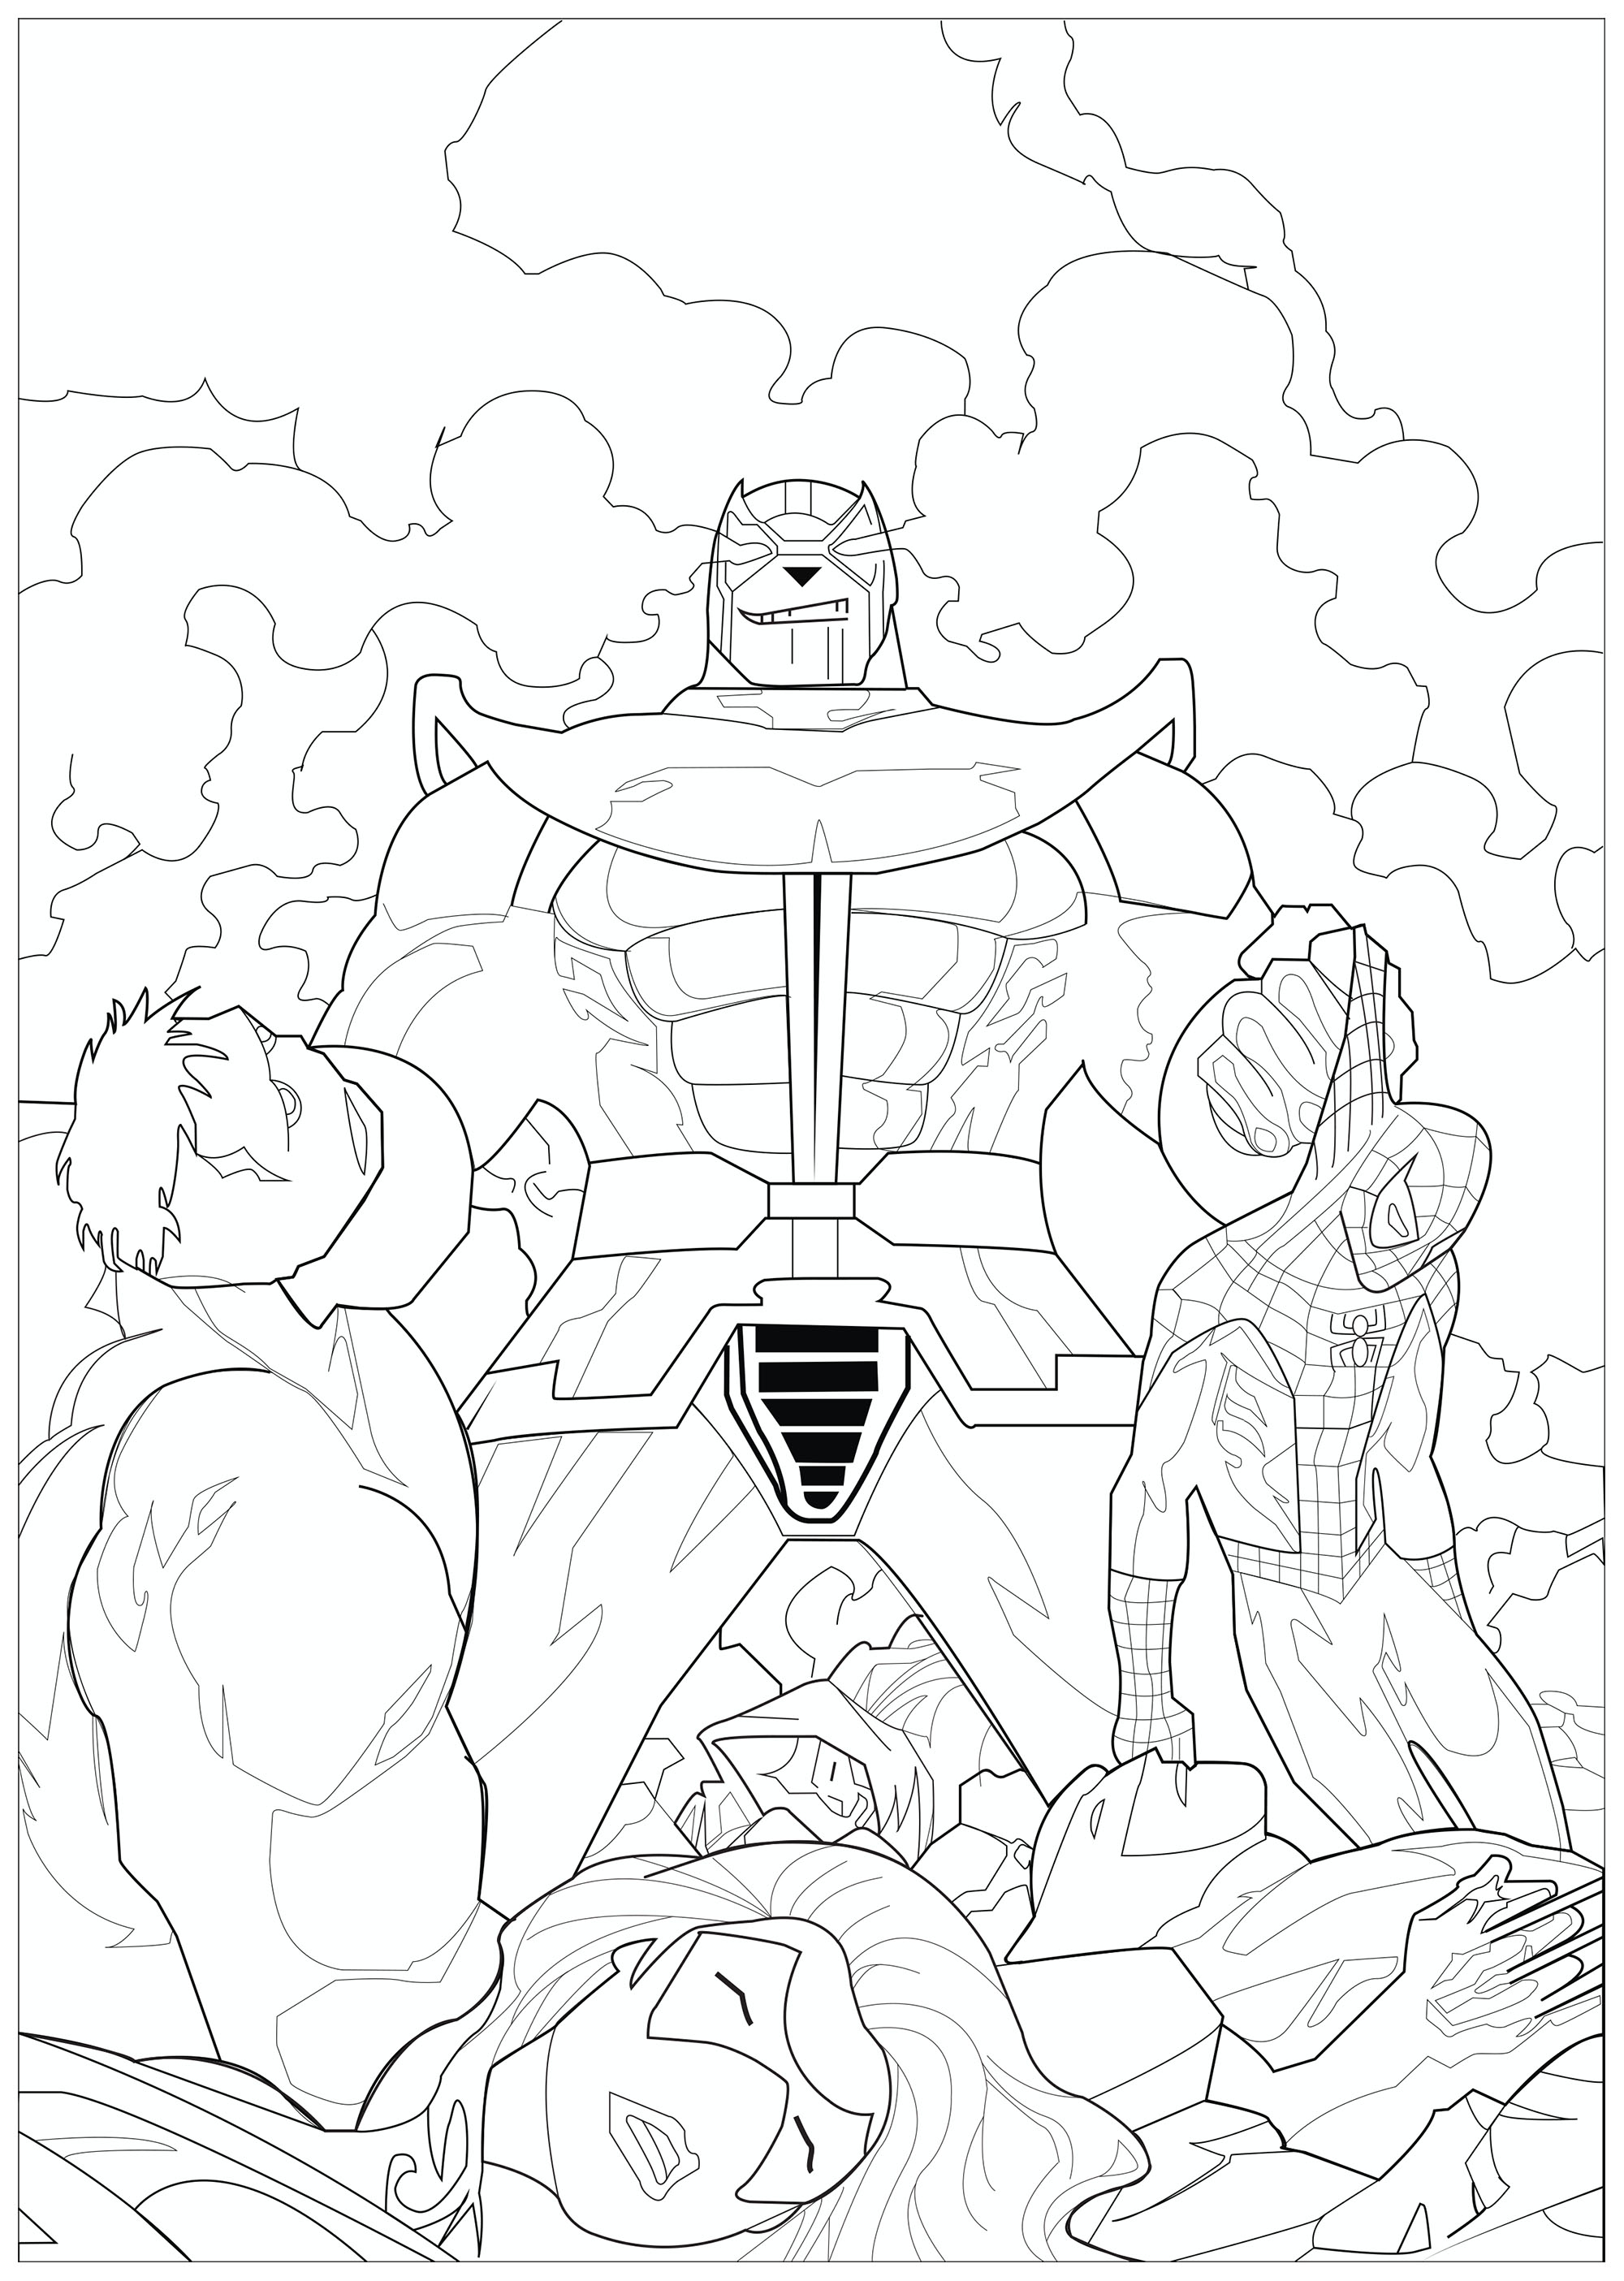 Thanos con los cuerpos de los Vengadores que mató : Hulk, Spiderman, Iron man, Viuda negra.